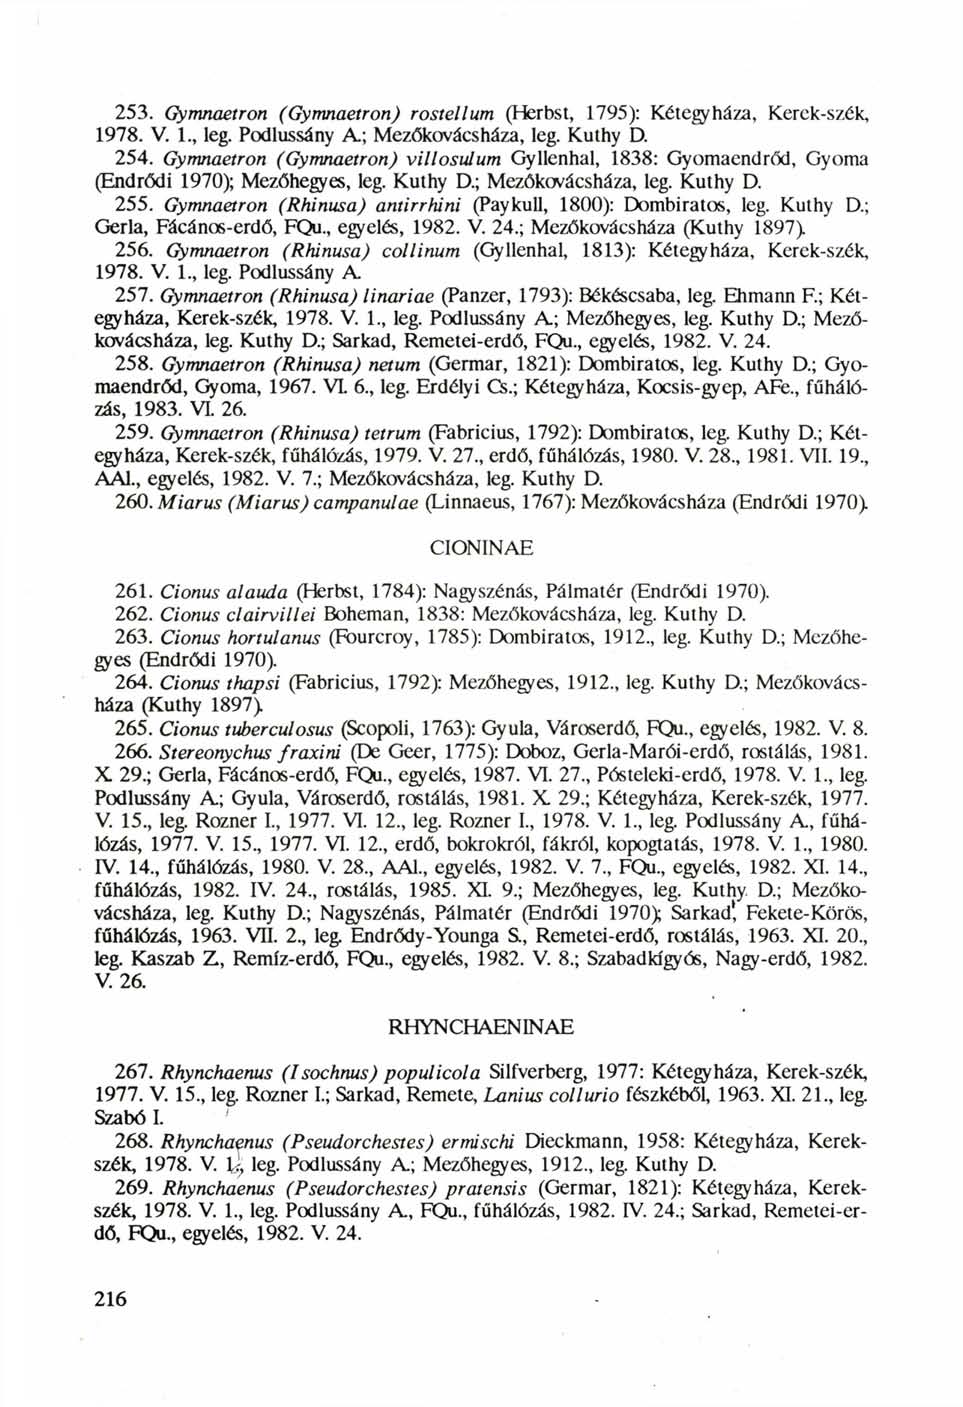 253. Gymnaetron (Gymnaetron) rostellum (Herbst, 1795): Kétegyháza, Kerek-szék, 1978. V. 1, leg. Podlussány A; Mezőkovácsháza, leg. Kuthy D. 254.